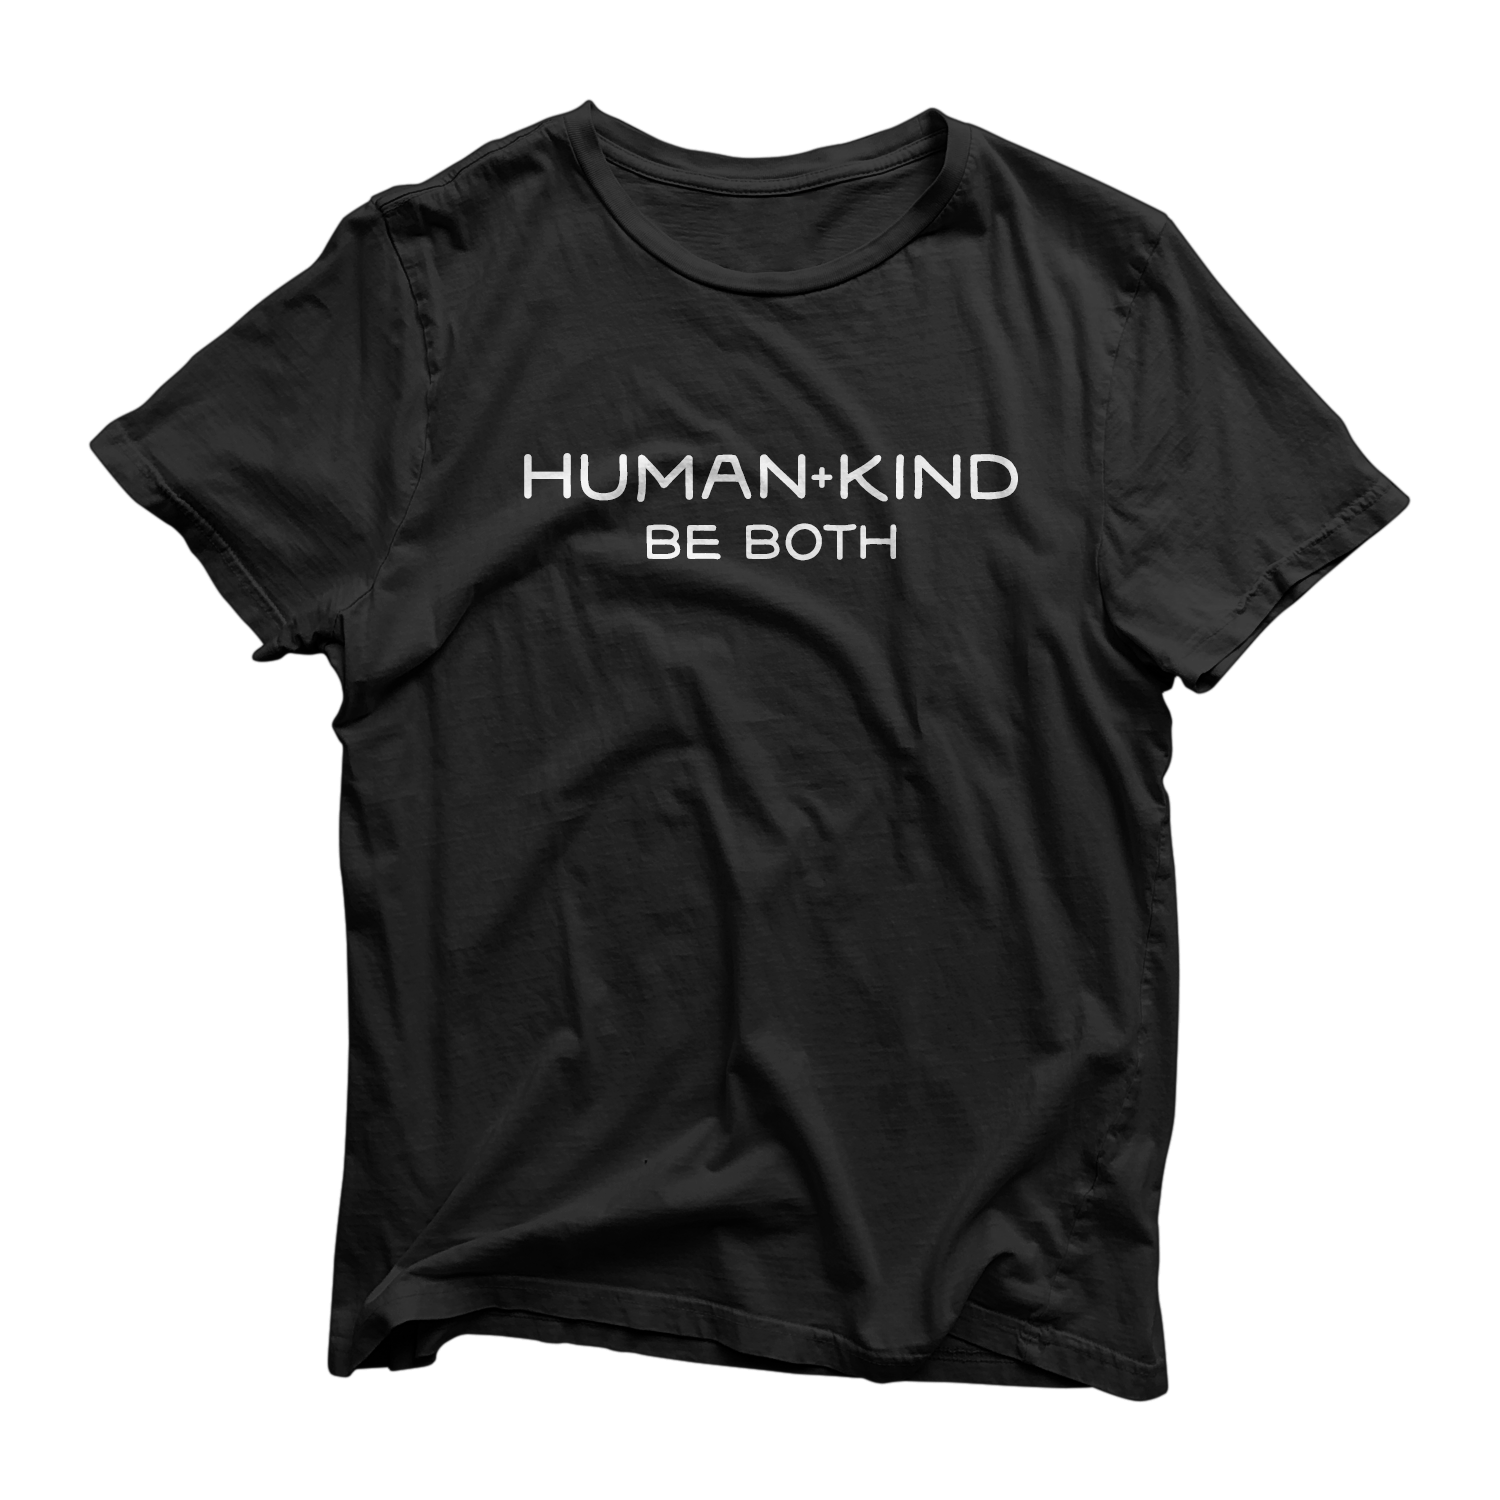 Human + Kind - Unisex Tee